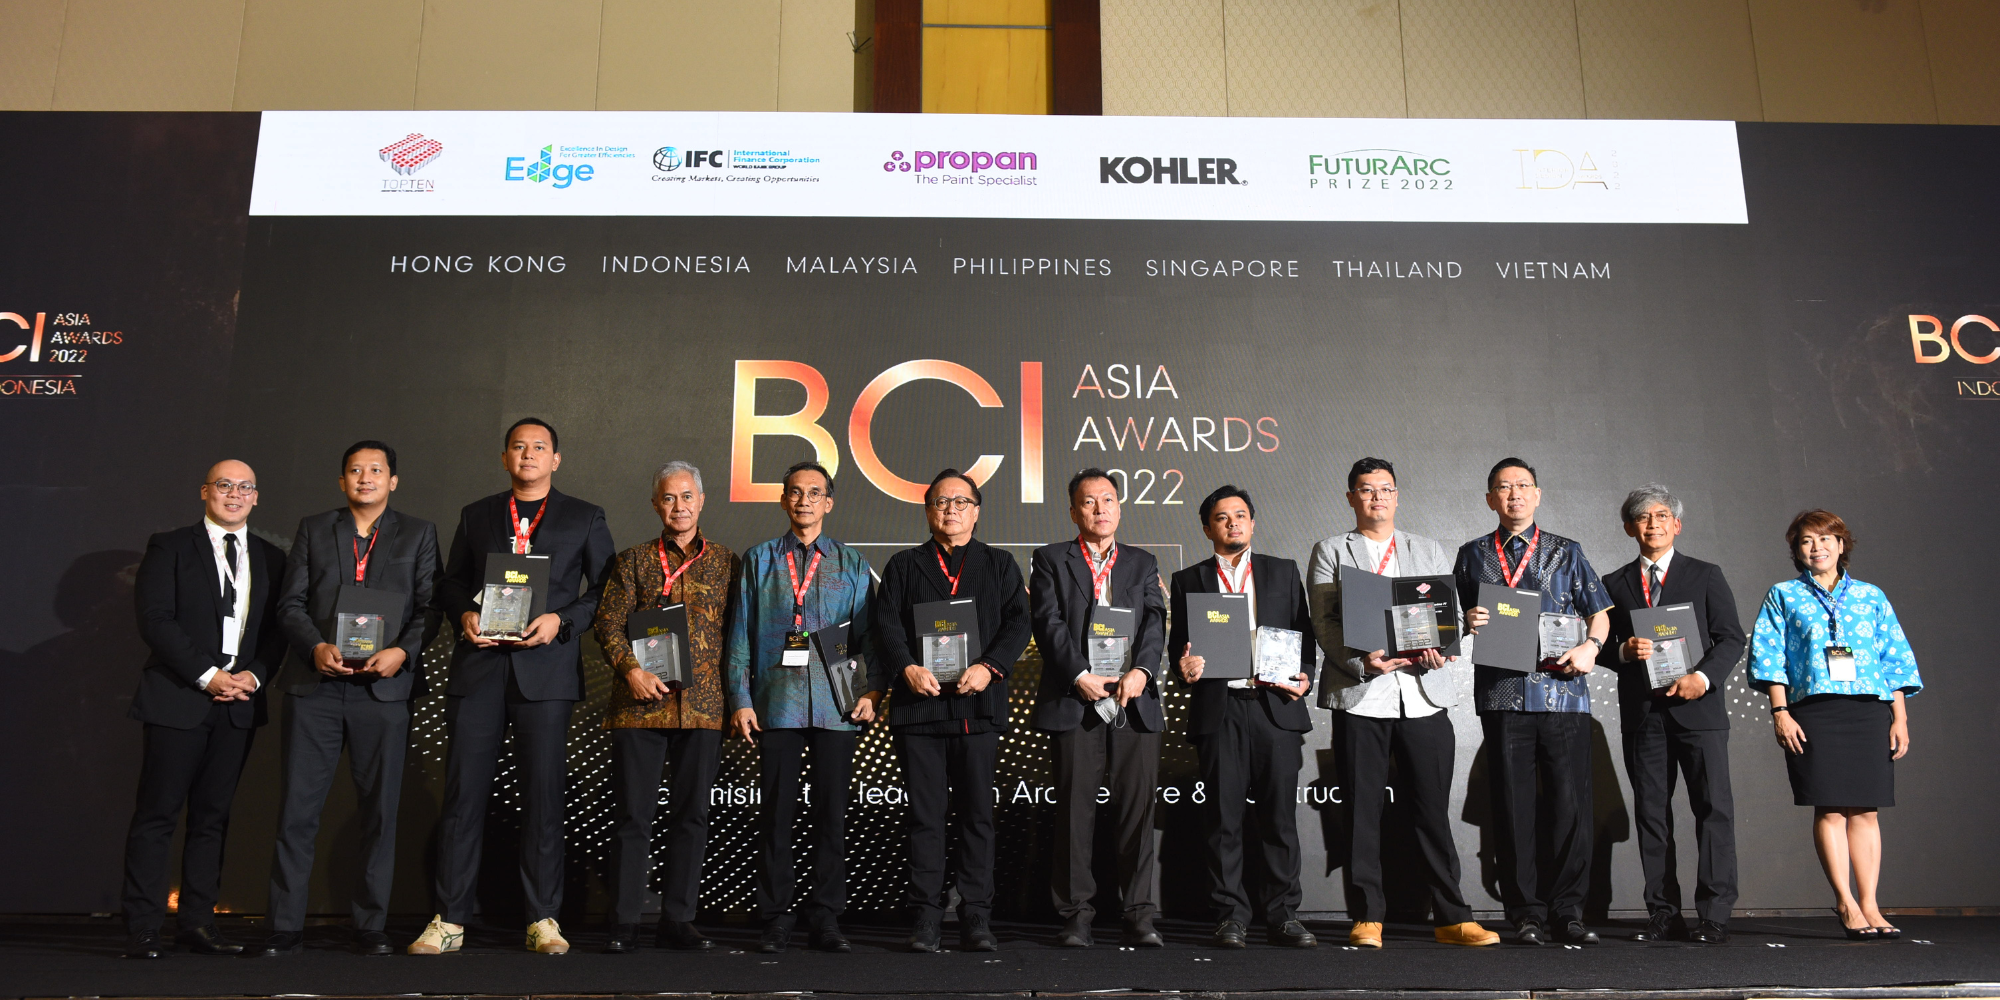 ภาพเด่นสำหรับ “ BCI Asia Awards อินโดนีเซีย 2022 ”